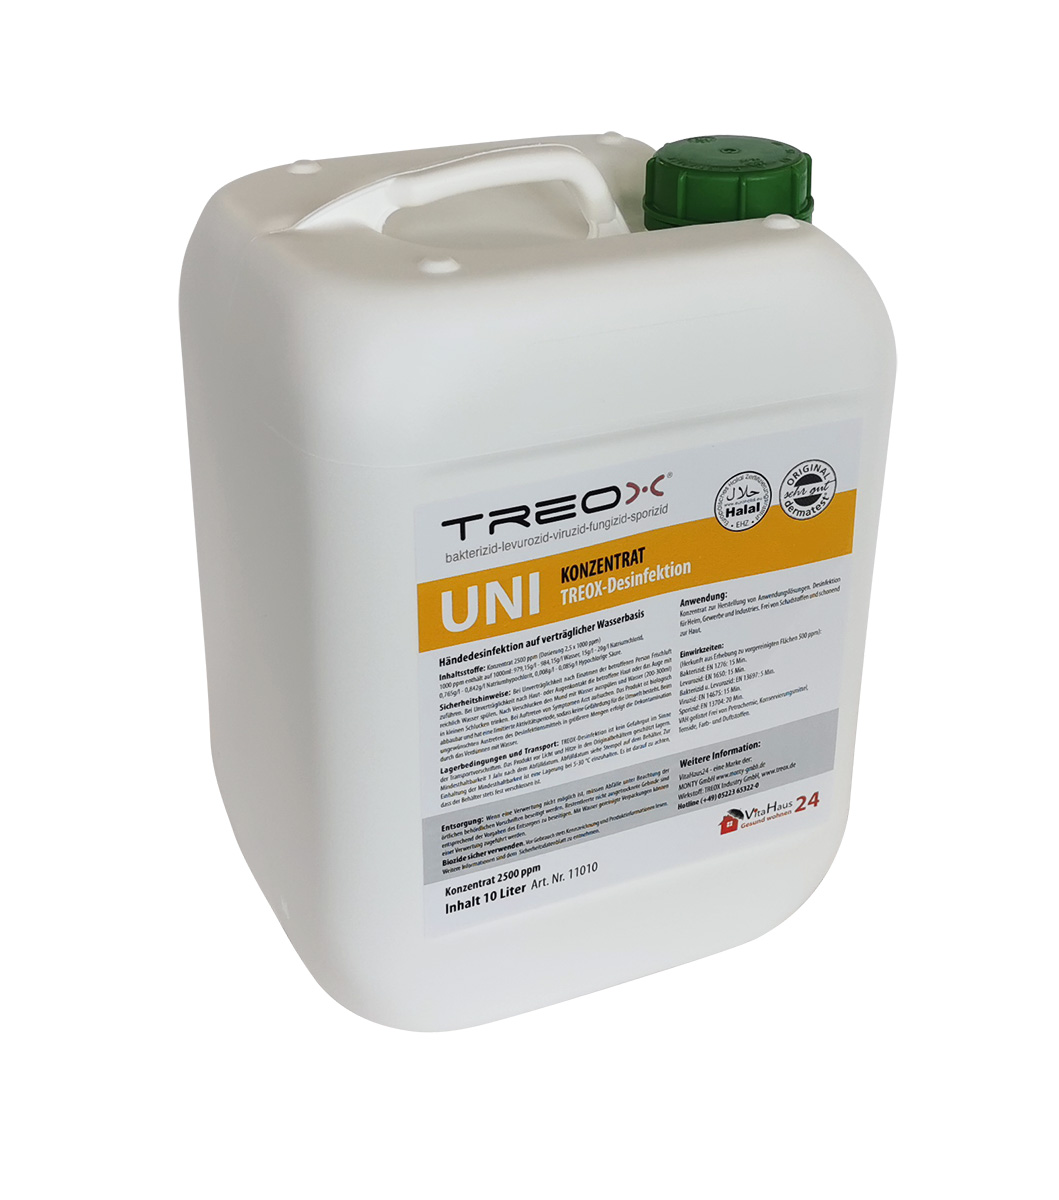 TREOX UNI-Superkonzentrat Kanister 10 Liter 